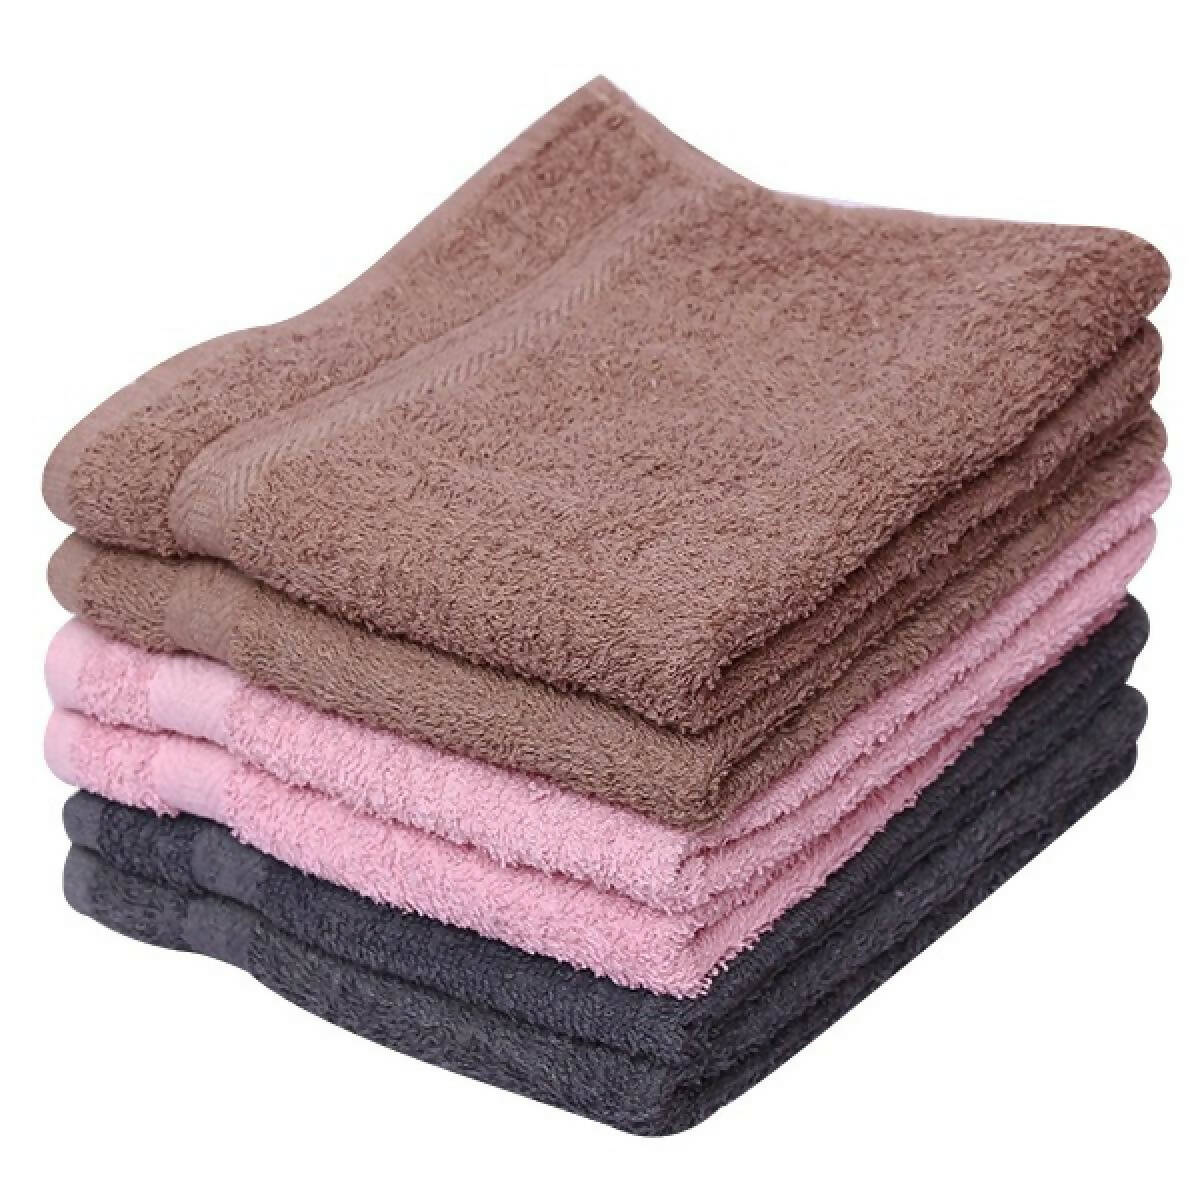 Bath Towels 20 x 36 Inch Export Quality 6 Pcs